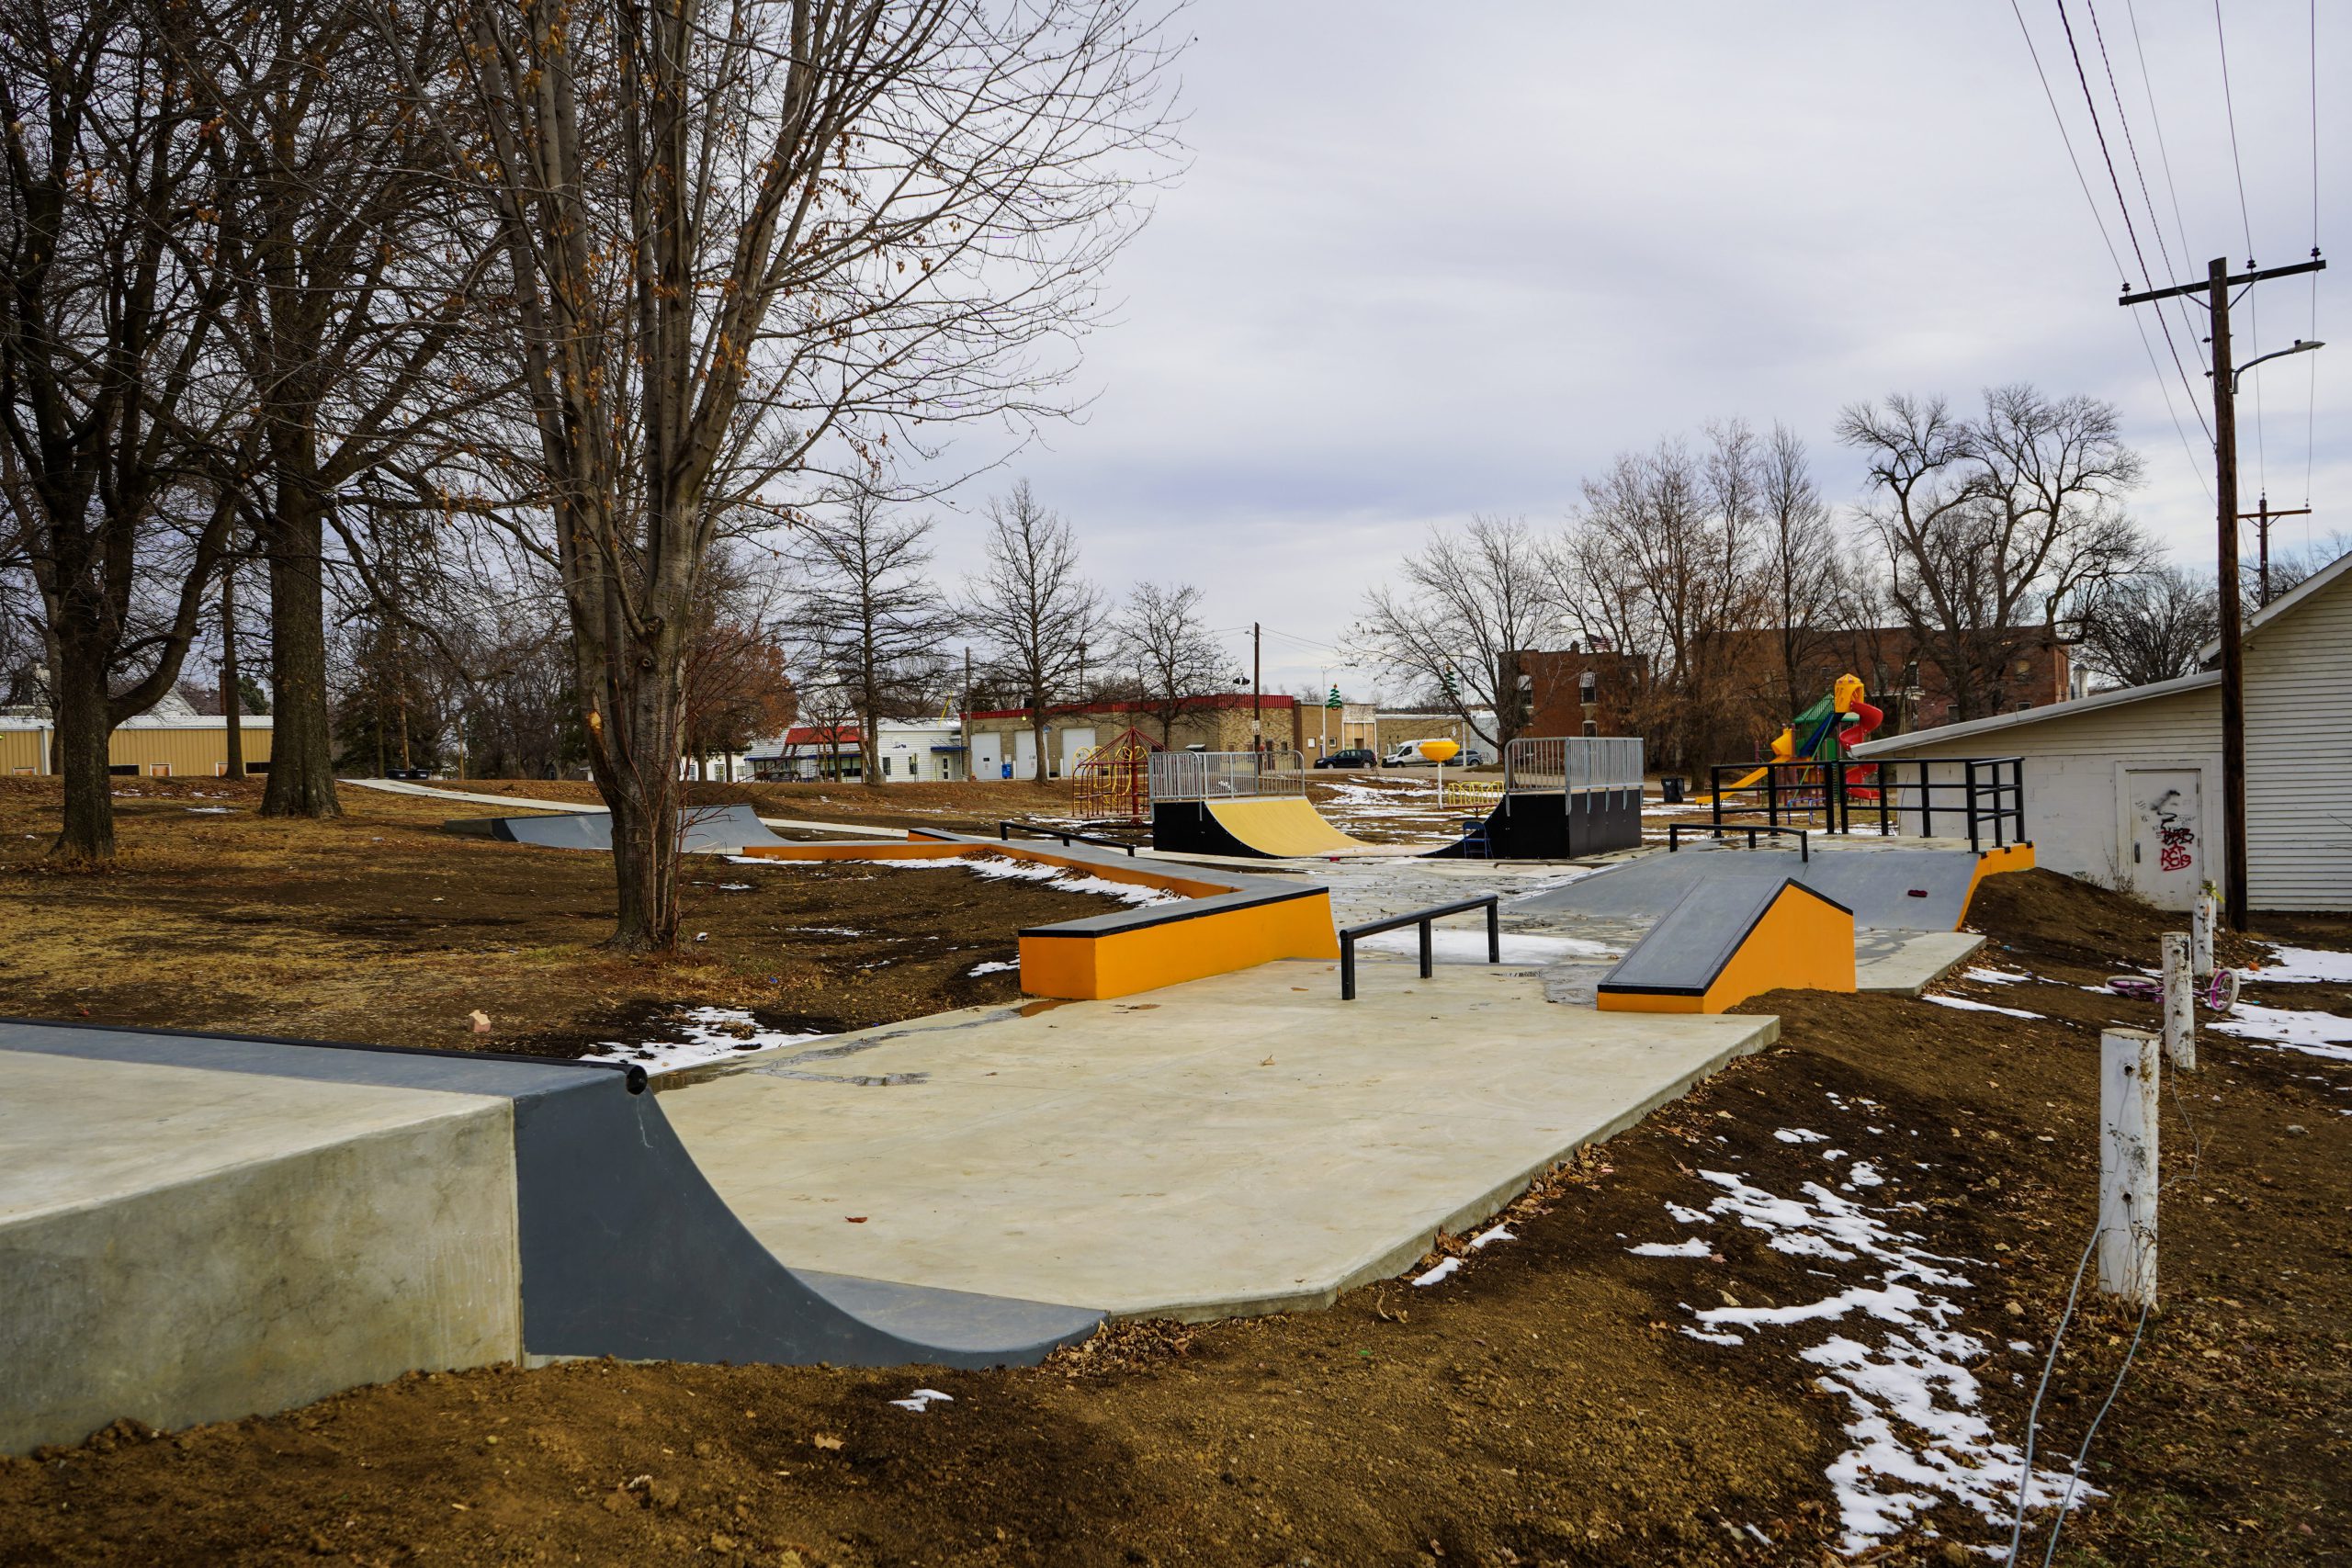 Skate Park - Omaha Reservation